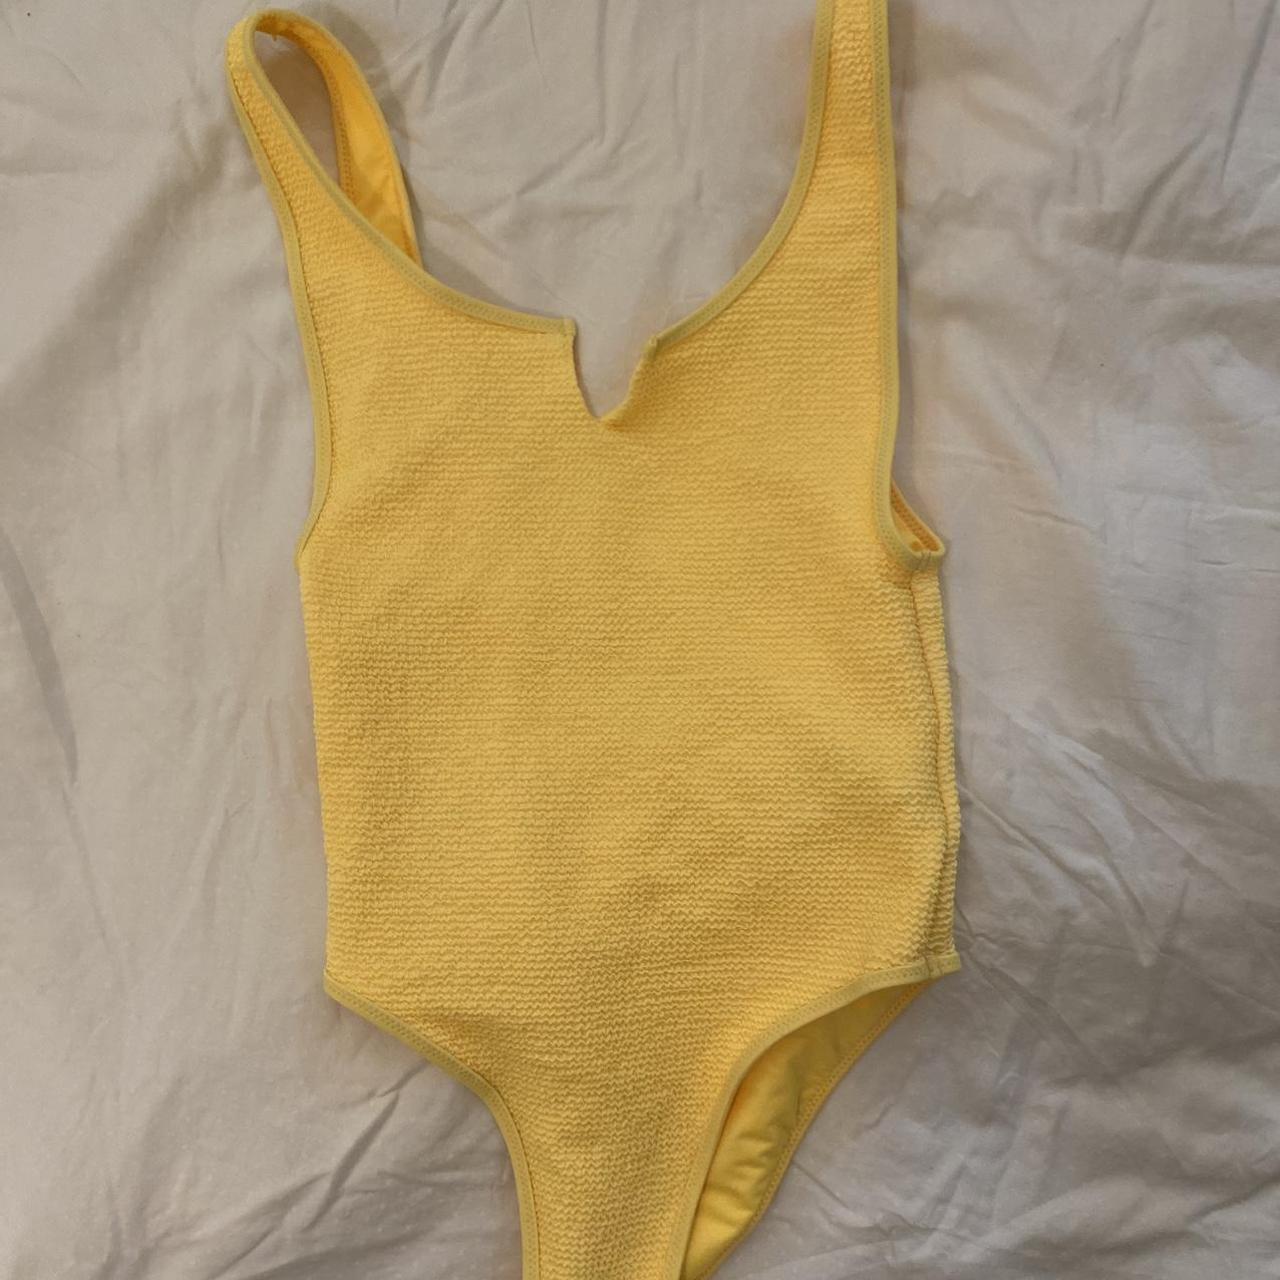 Topshop Women's Yellow Swimsuit-one-piece | Depop